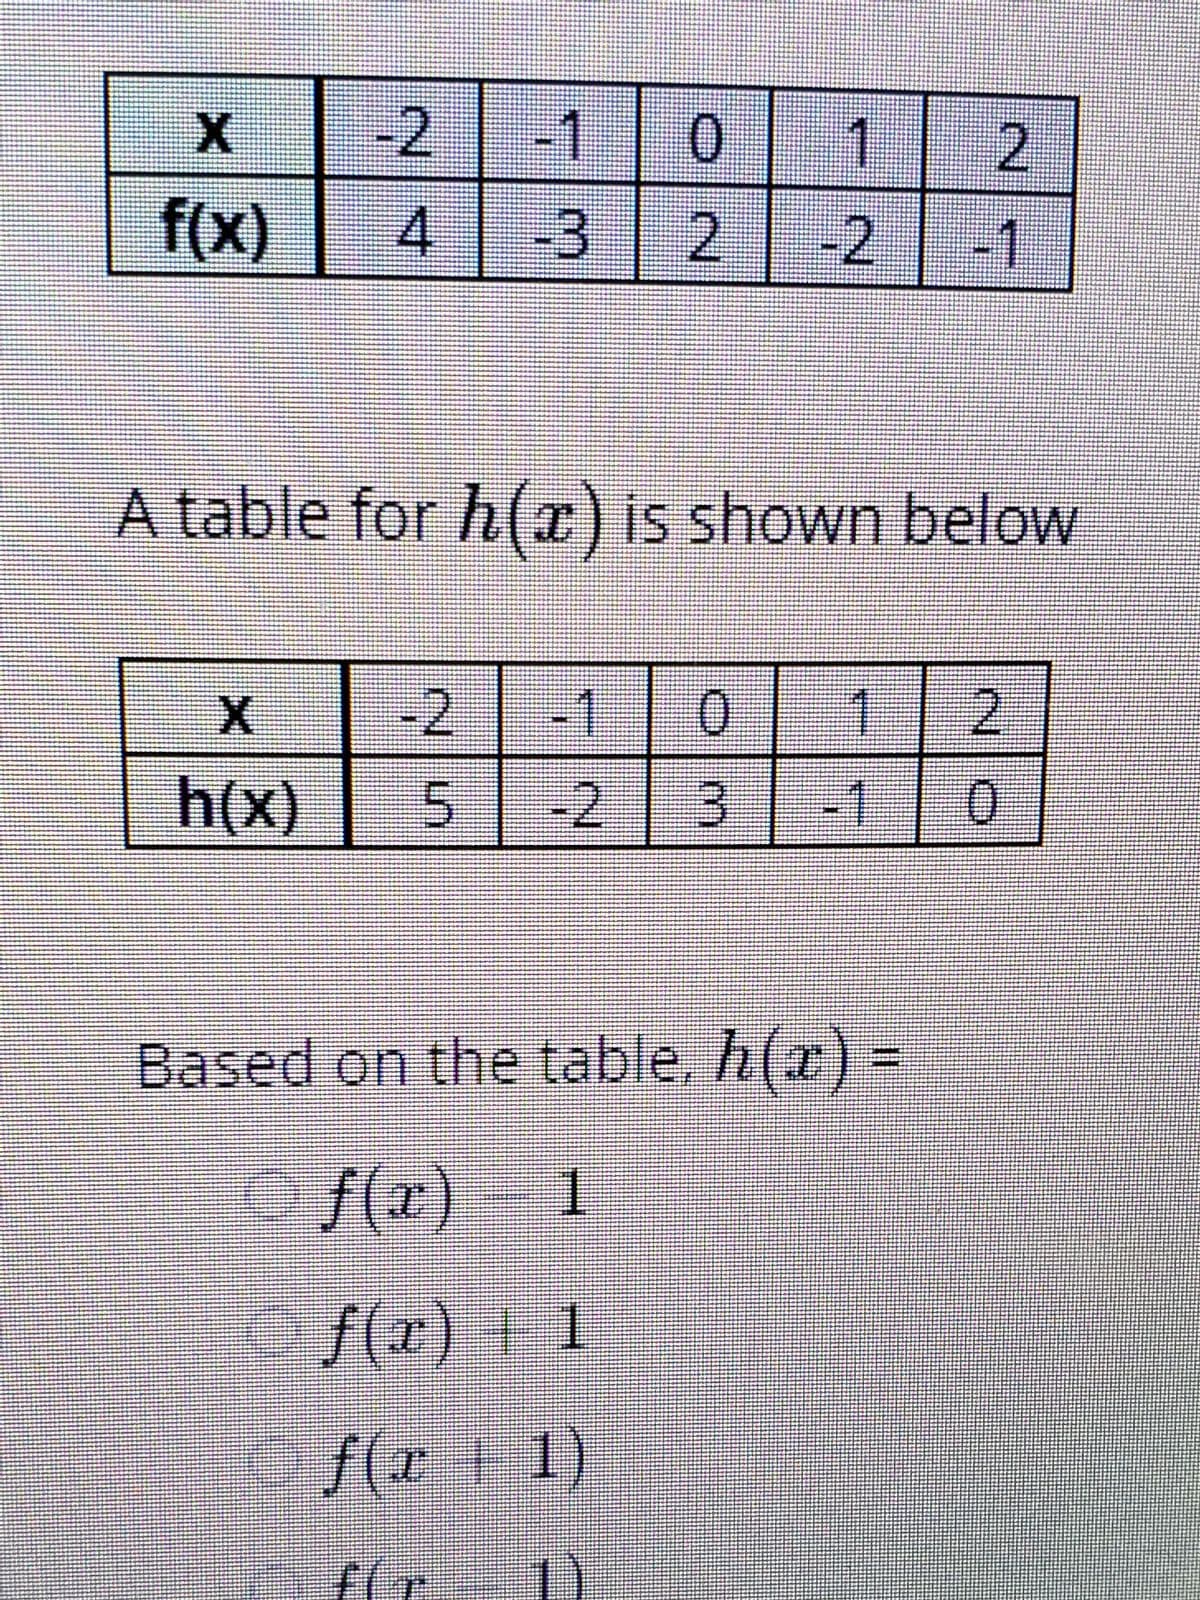 -2
-1
1
f(x)
-3 2
-2 1
A table for h(c) is shown below
-2
+1
2.
h(x)
-2 3
)
-1
0.
Based on the table. h(a) =
O f(r)
/(x) F 1
f(x 1)
1)
2.
4.
